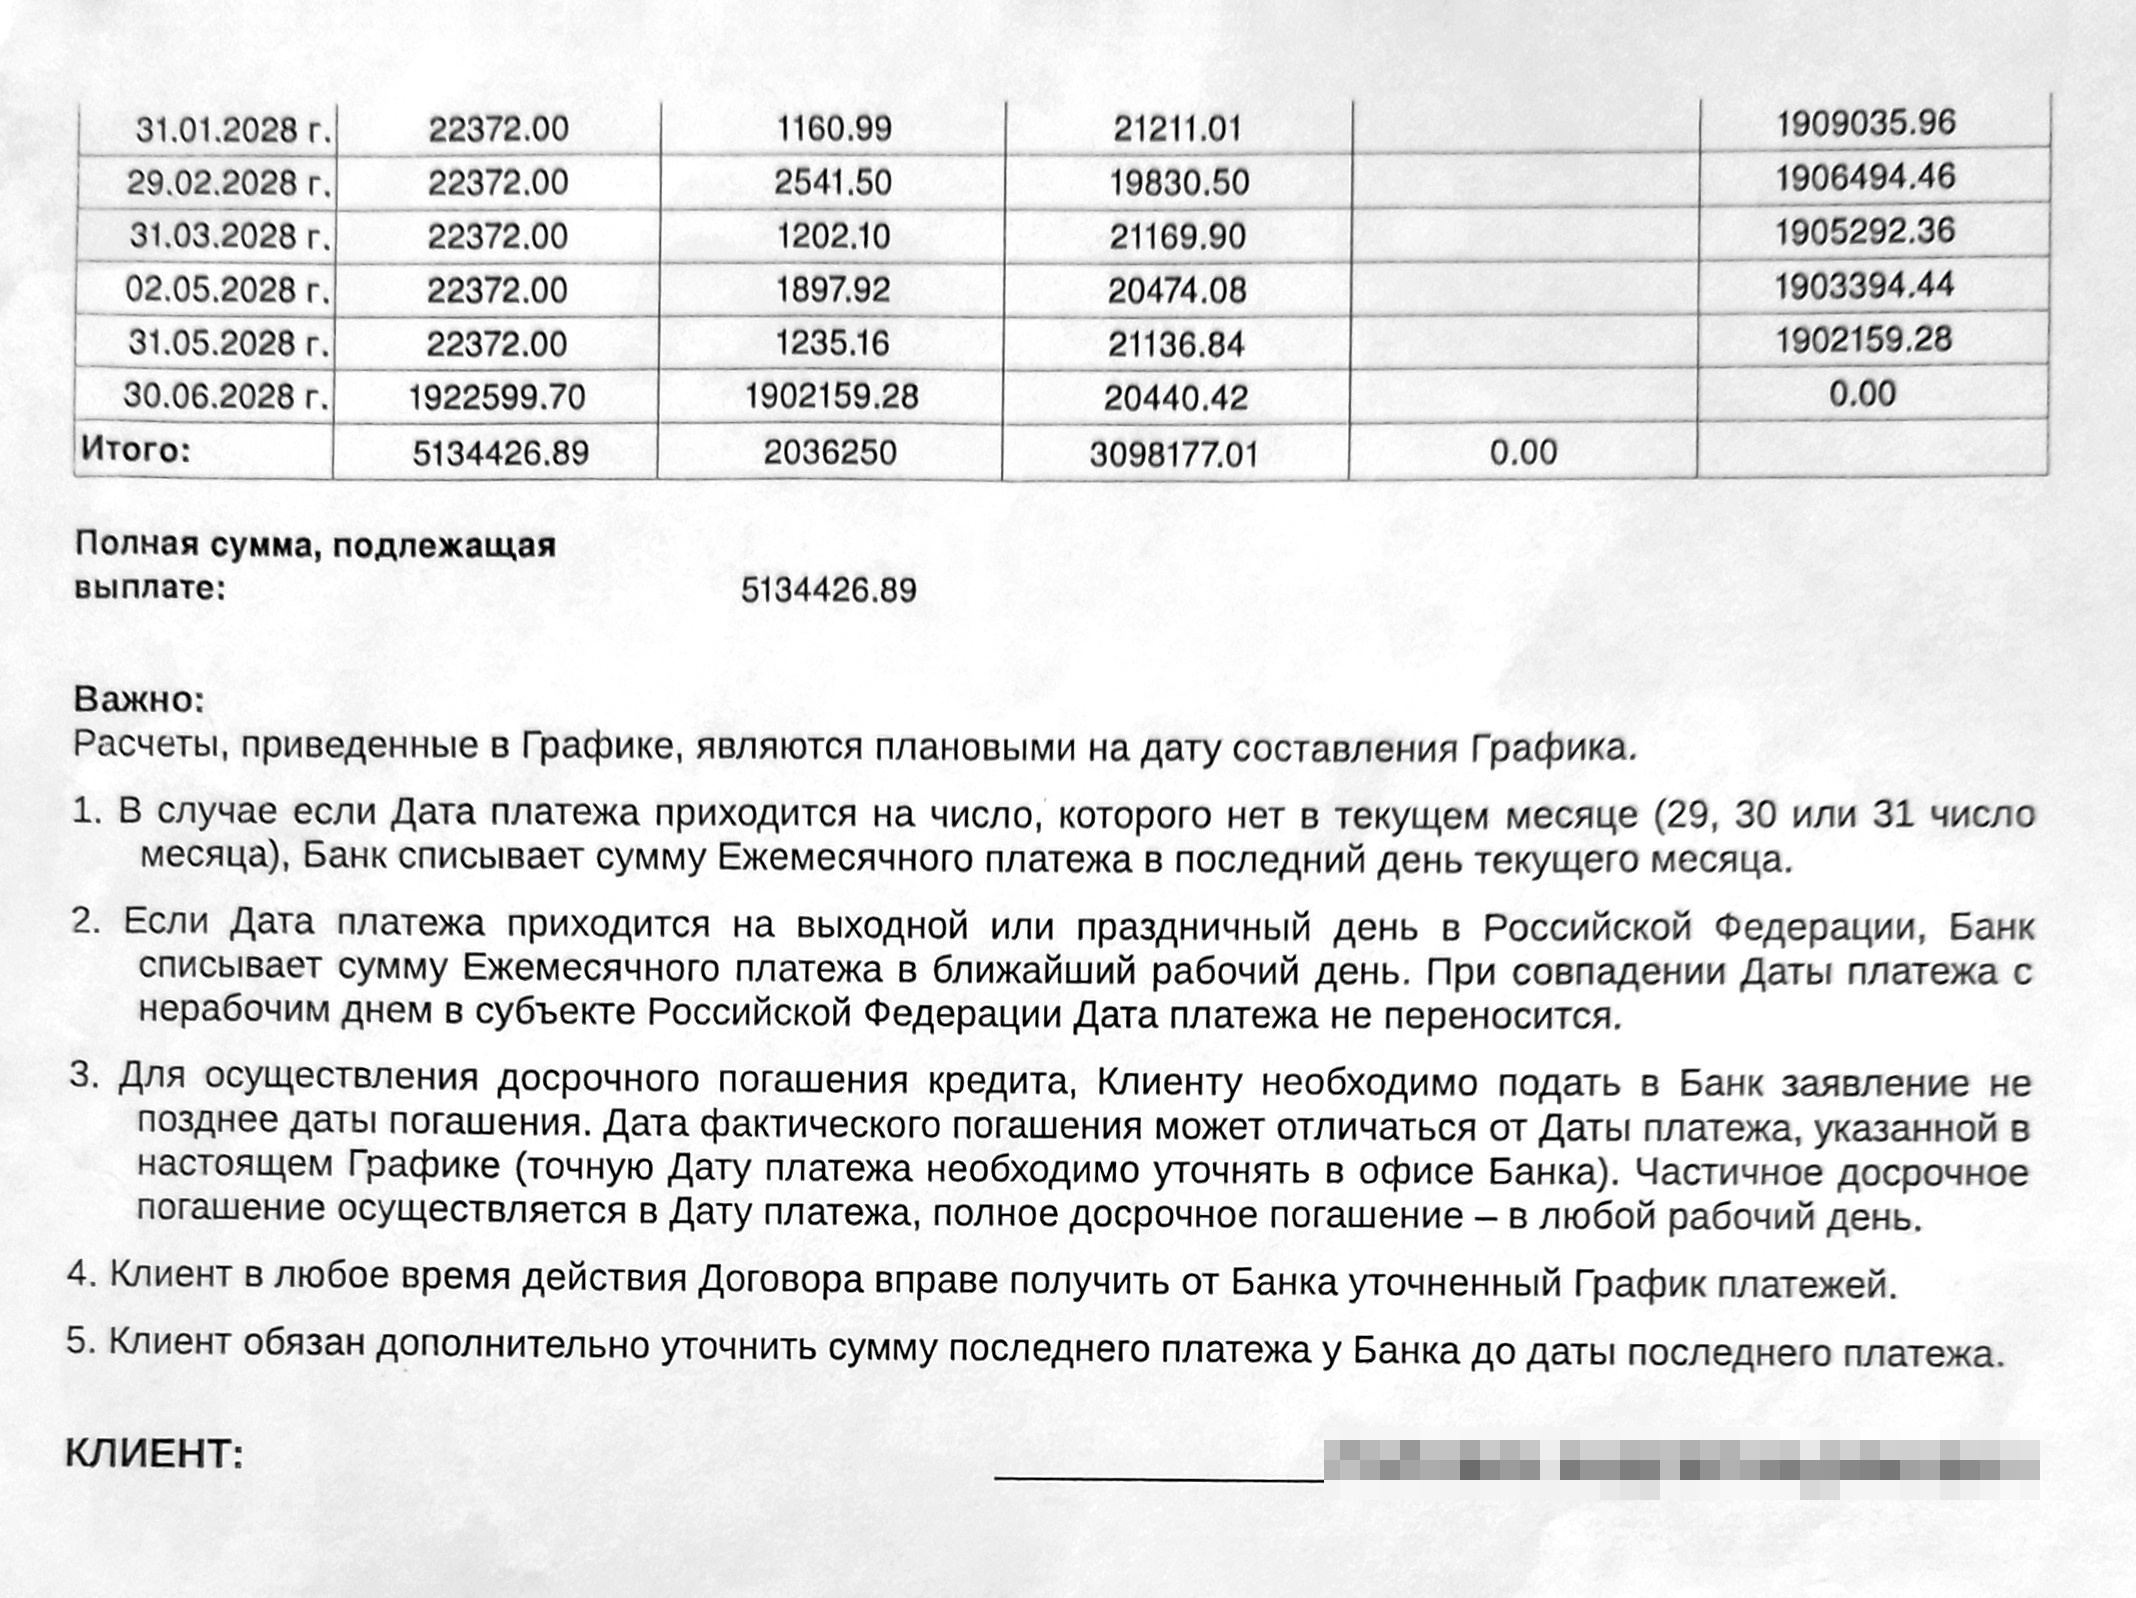 Неприятный сюрприз был в том, что последний платеж — в июне 2028 года — должен был составить почти 2 млн рублей. Получалось, что все остальное время я платил только проценты!